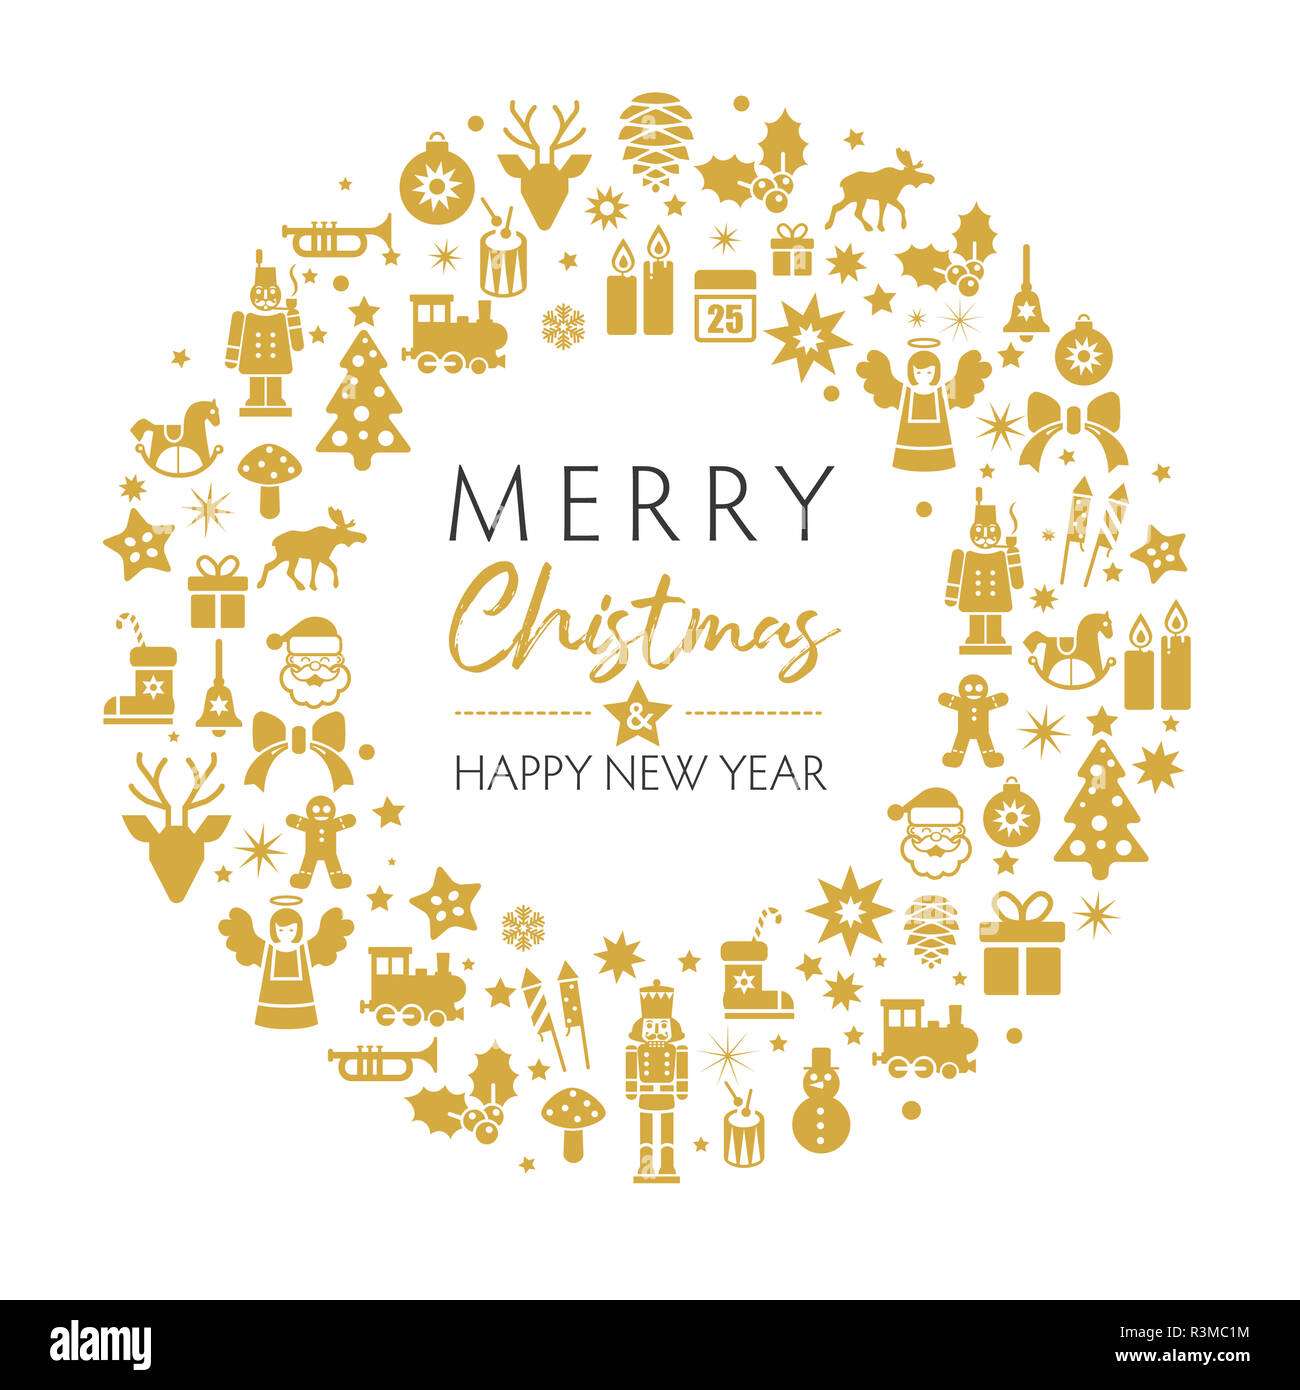 Feliz Navidad y feliz año nuevo tarjeta de felicitación con símbolos de navidad de oro sobre fondo blanco. Diseño de tipografía Vintage para Navidad, Año Nuevo emble Foto de stock